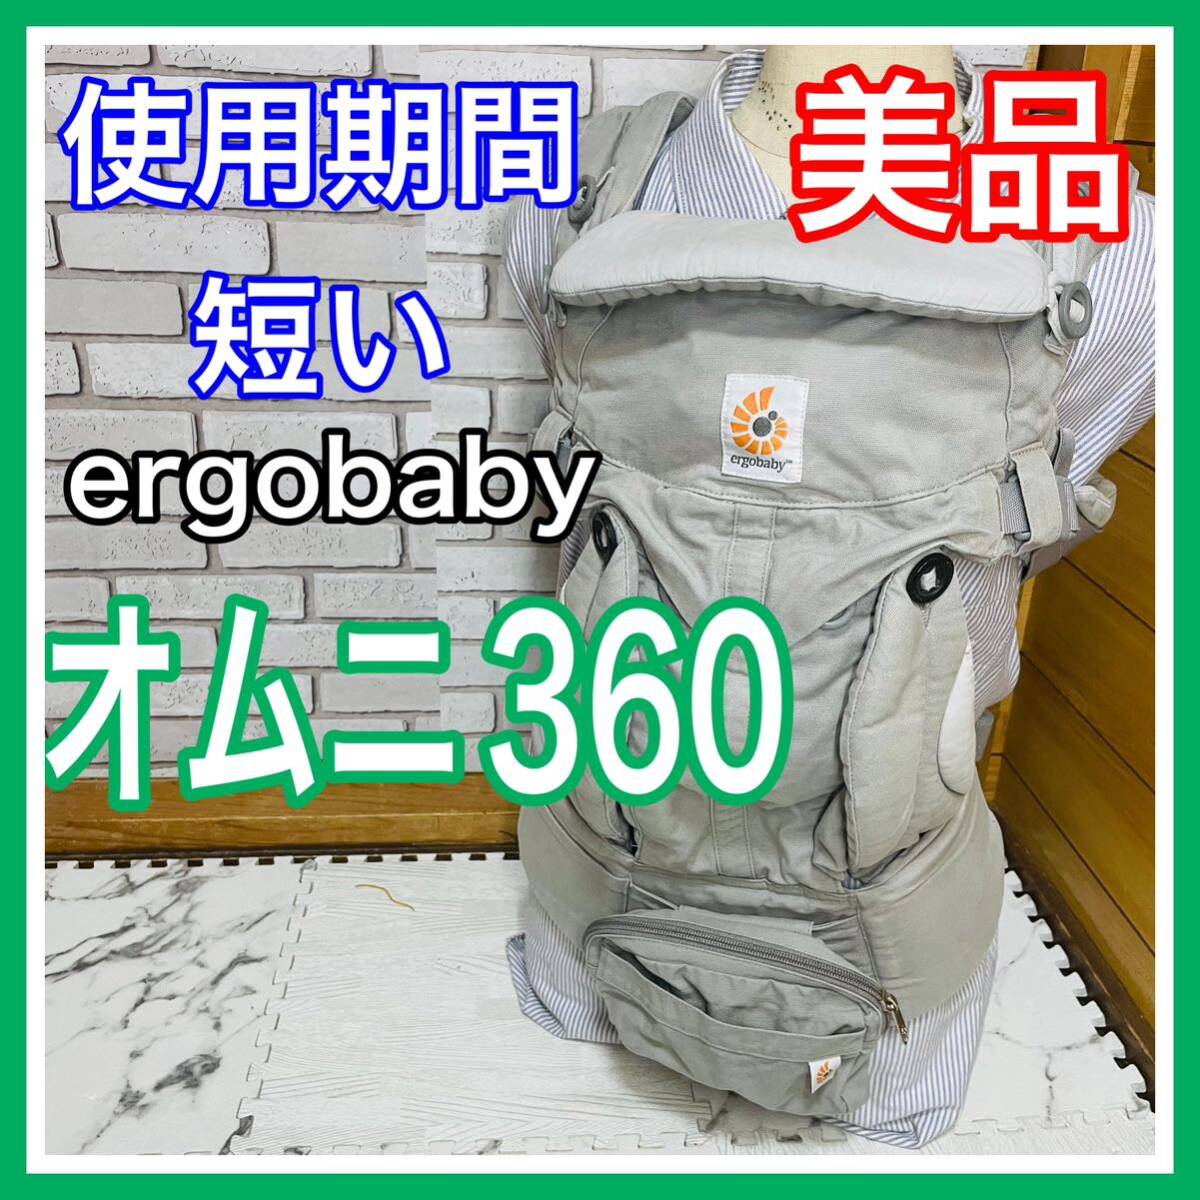  быстрое решение использование 4 месяцев прекрасный товар L go baby Homme ni360 серый слинг-переноска включая доставку 5400 иен . снижена цена кто раньше, тот побеждает уборная завершено 